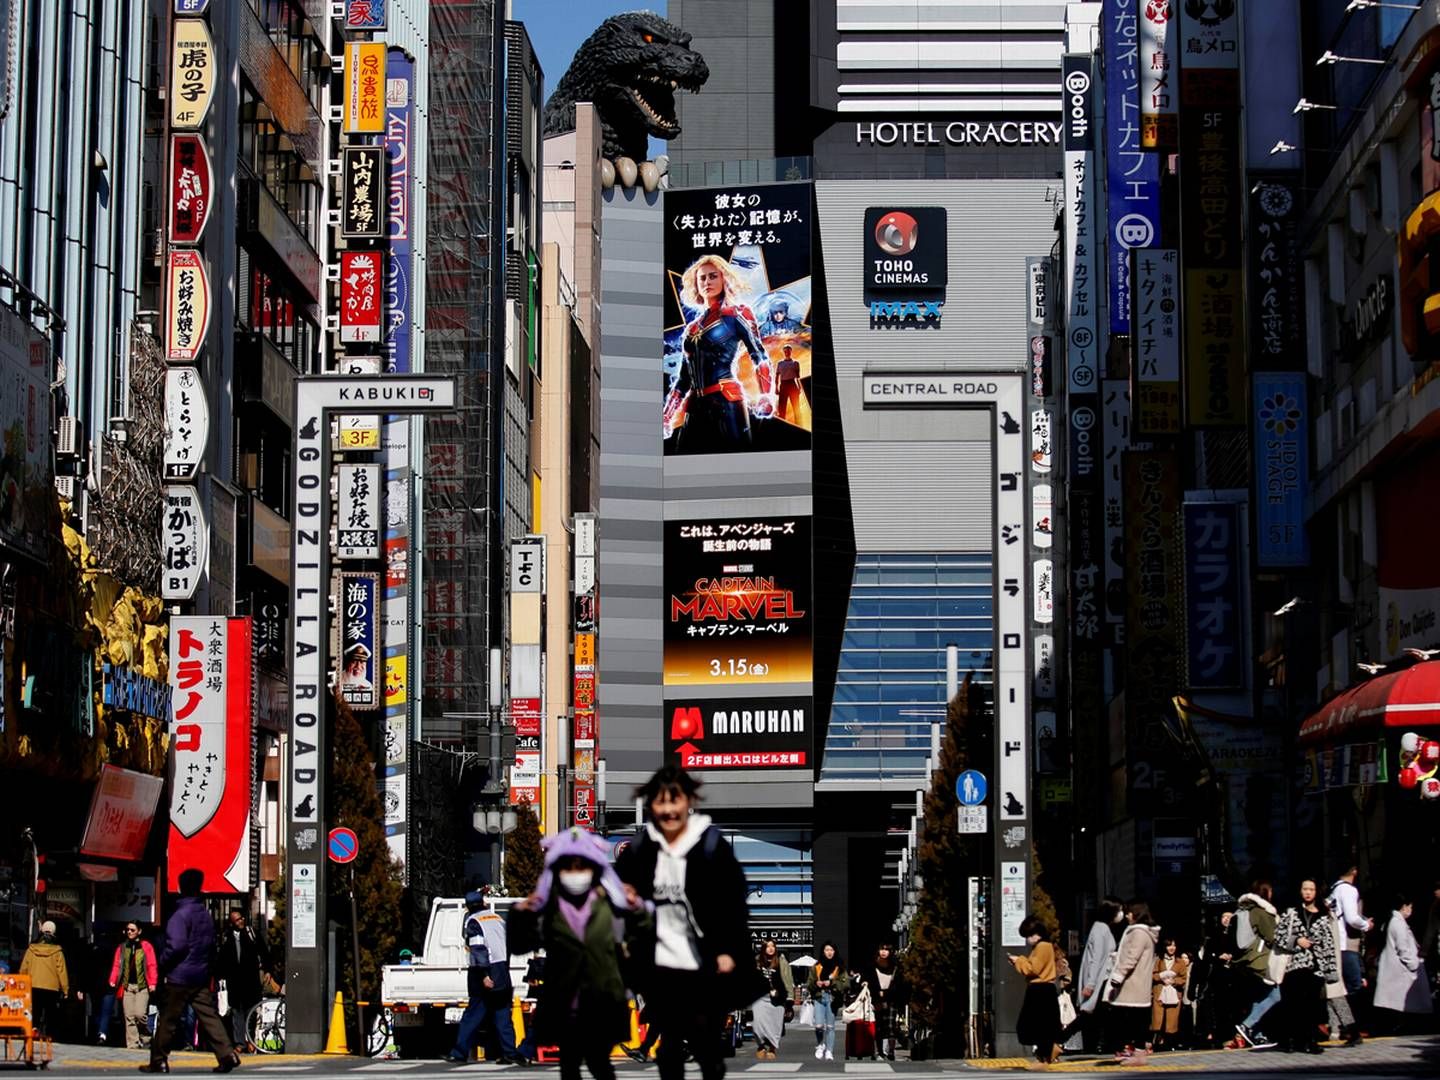 Datingspil er en millionforretning i Japan. | Foto: Kim Kyung-hoon/Reuters/Ritzau Scanpix